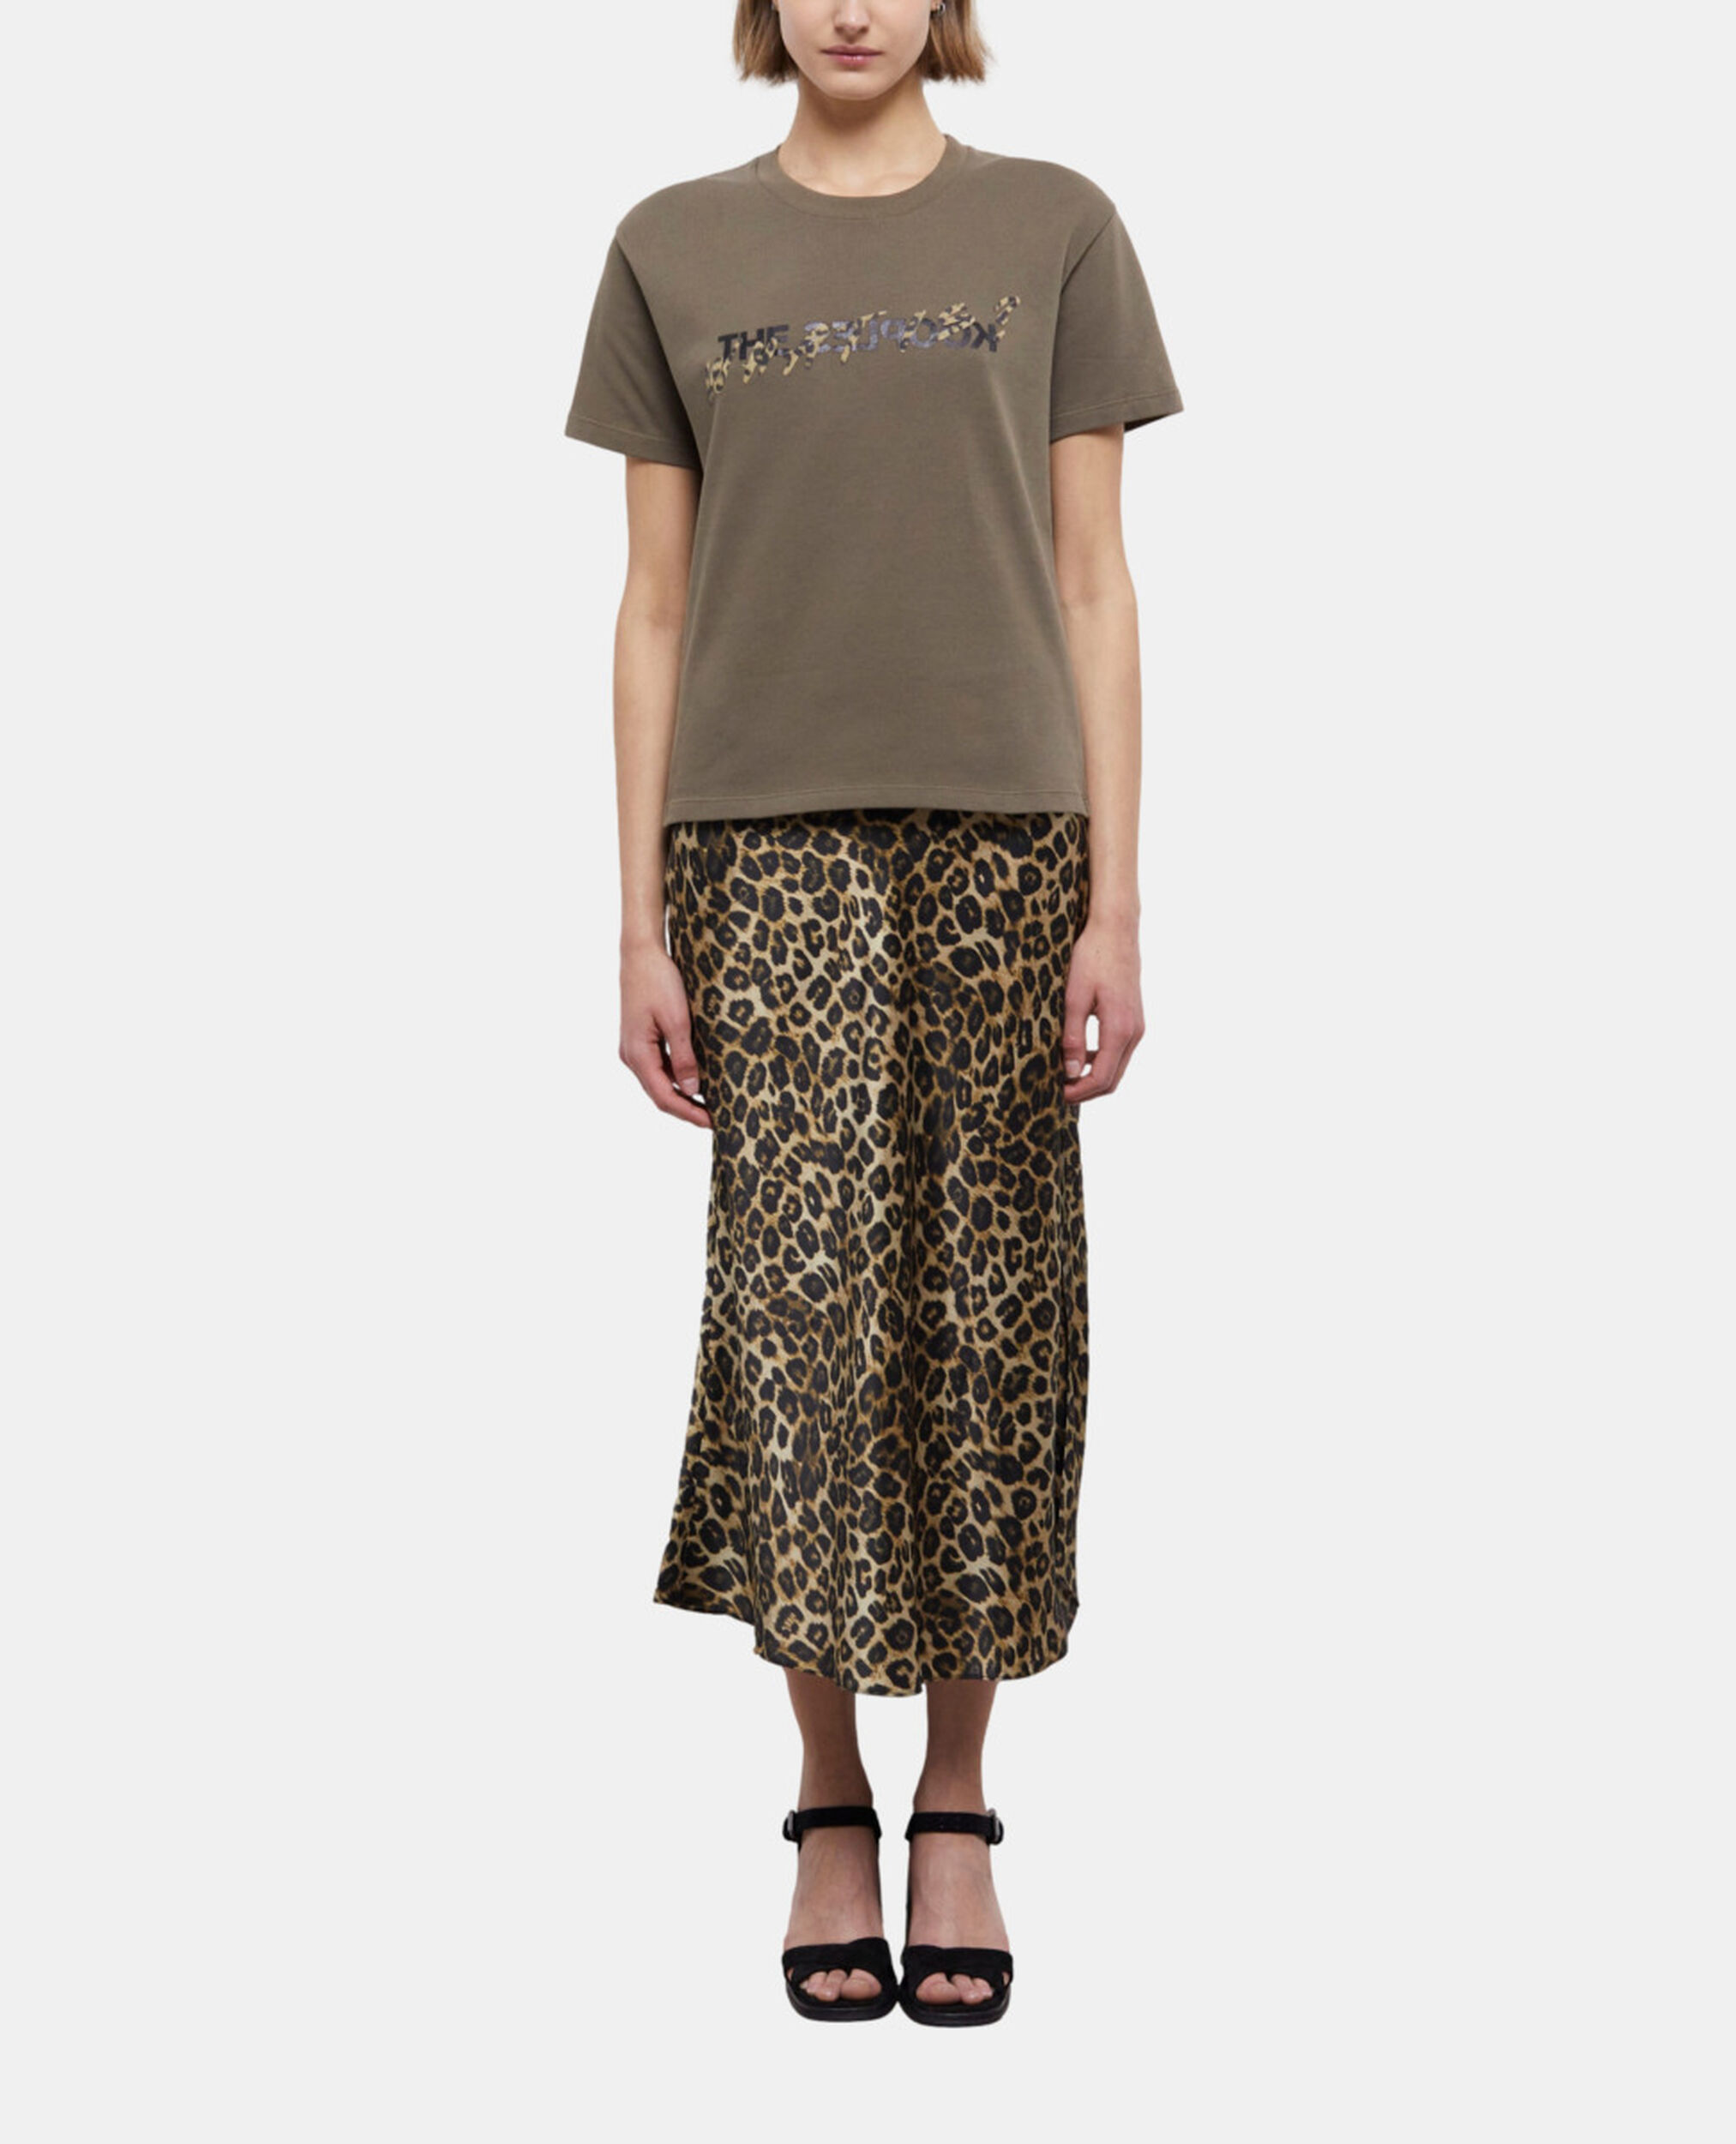 Khakifarbenes T-Shirt Damen mit Leopardenmuster und "What is"-Schriftzug, ALGUE, hi-res image number null